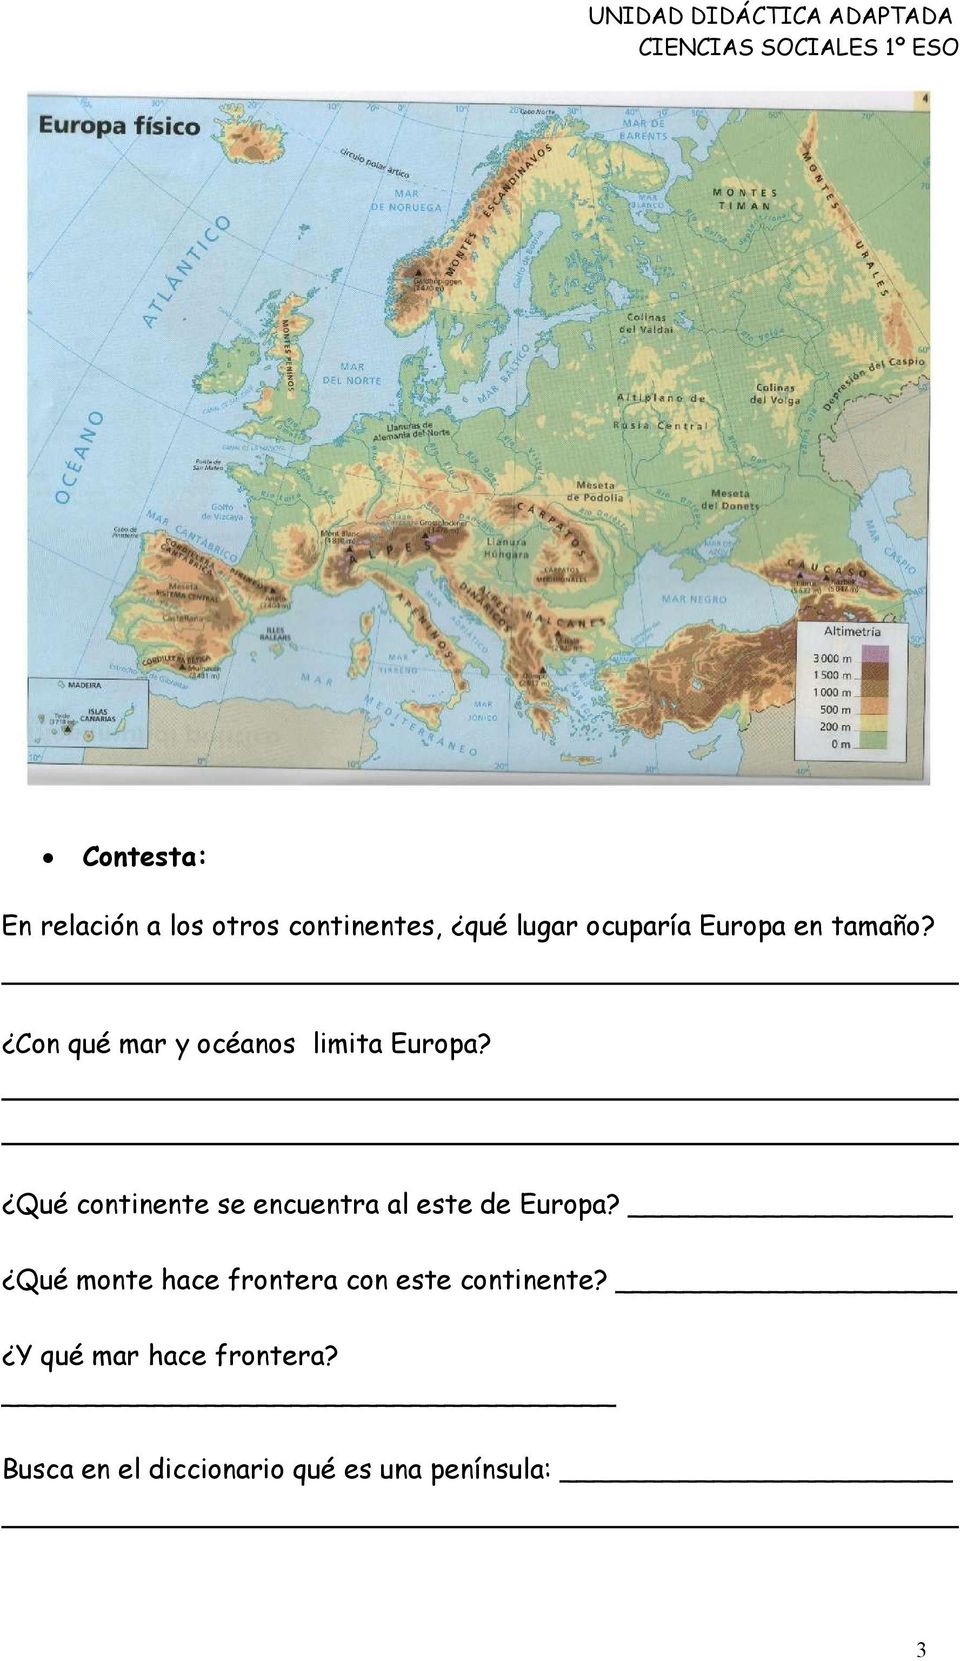 Qué continente se encuentra al este de Europa?